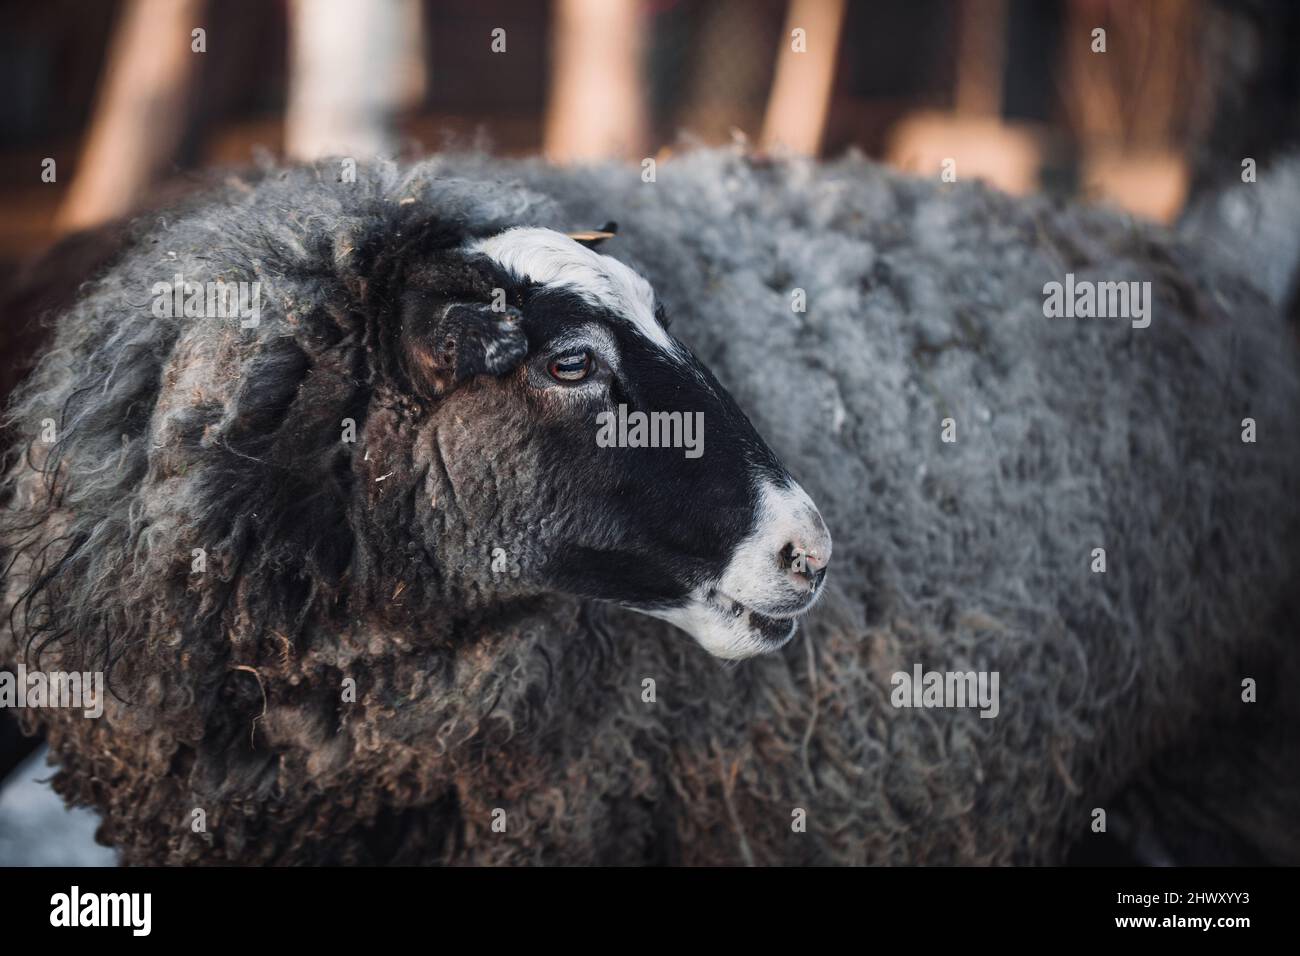 L'allevamento di ovini è un sostentamento molto popolare nel mondo. La pecora romanov partorisce molte prole alla volta. Gli agnelli Romanov sono molto piccoli alla nascita. Foto Stock